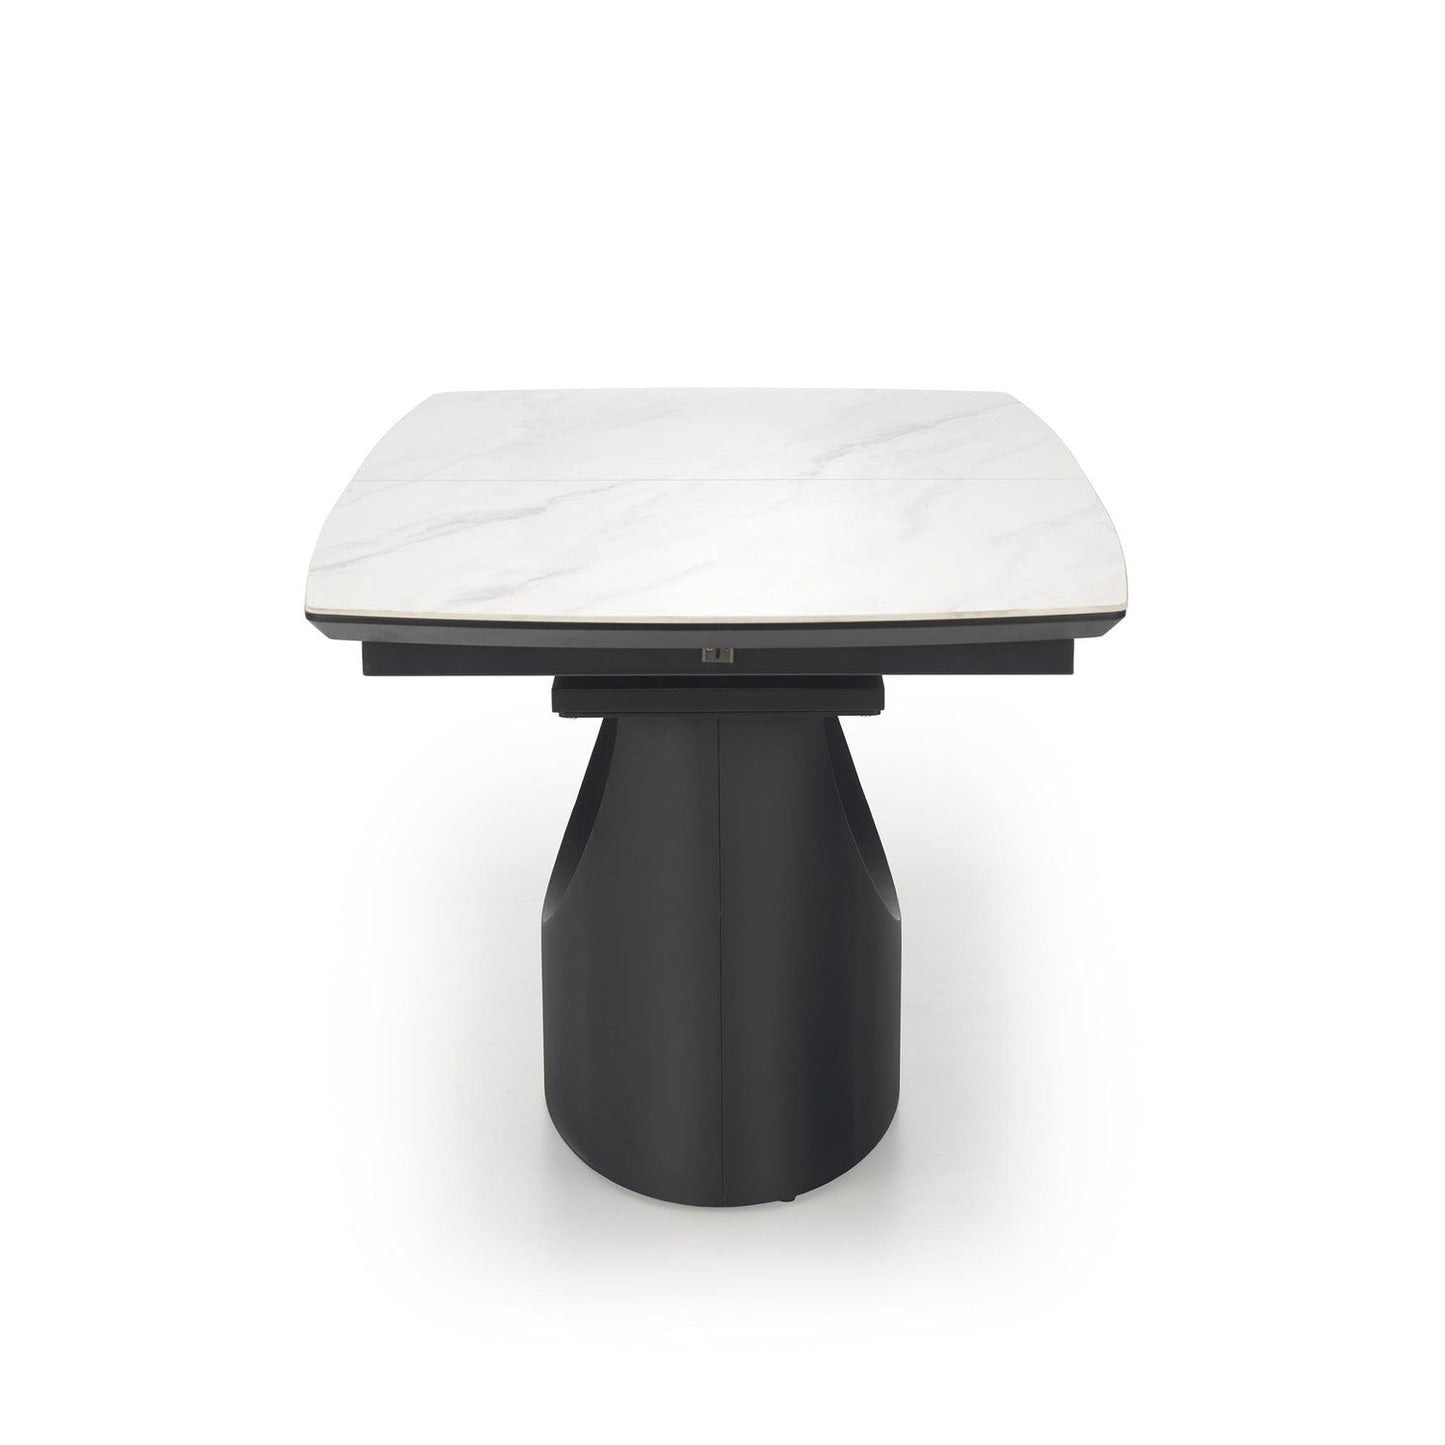 OS izgalāmams galds, baltais marmors / melns